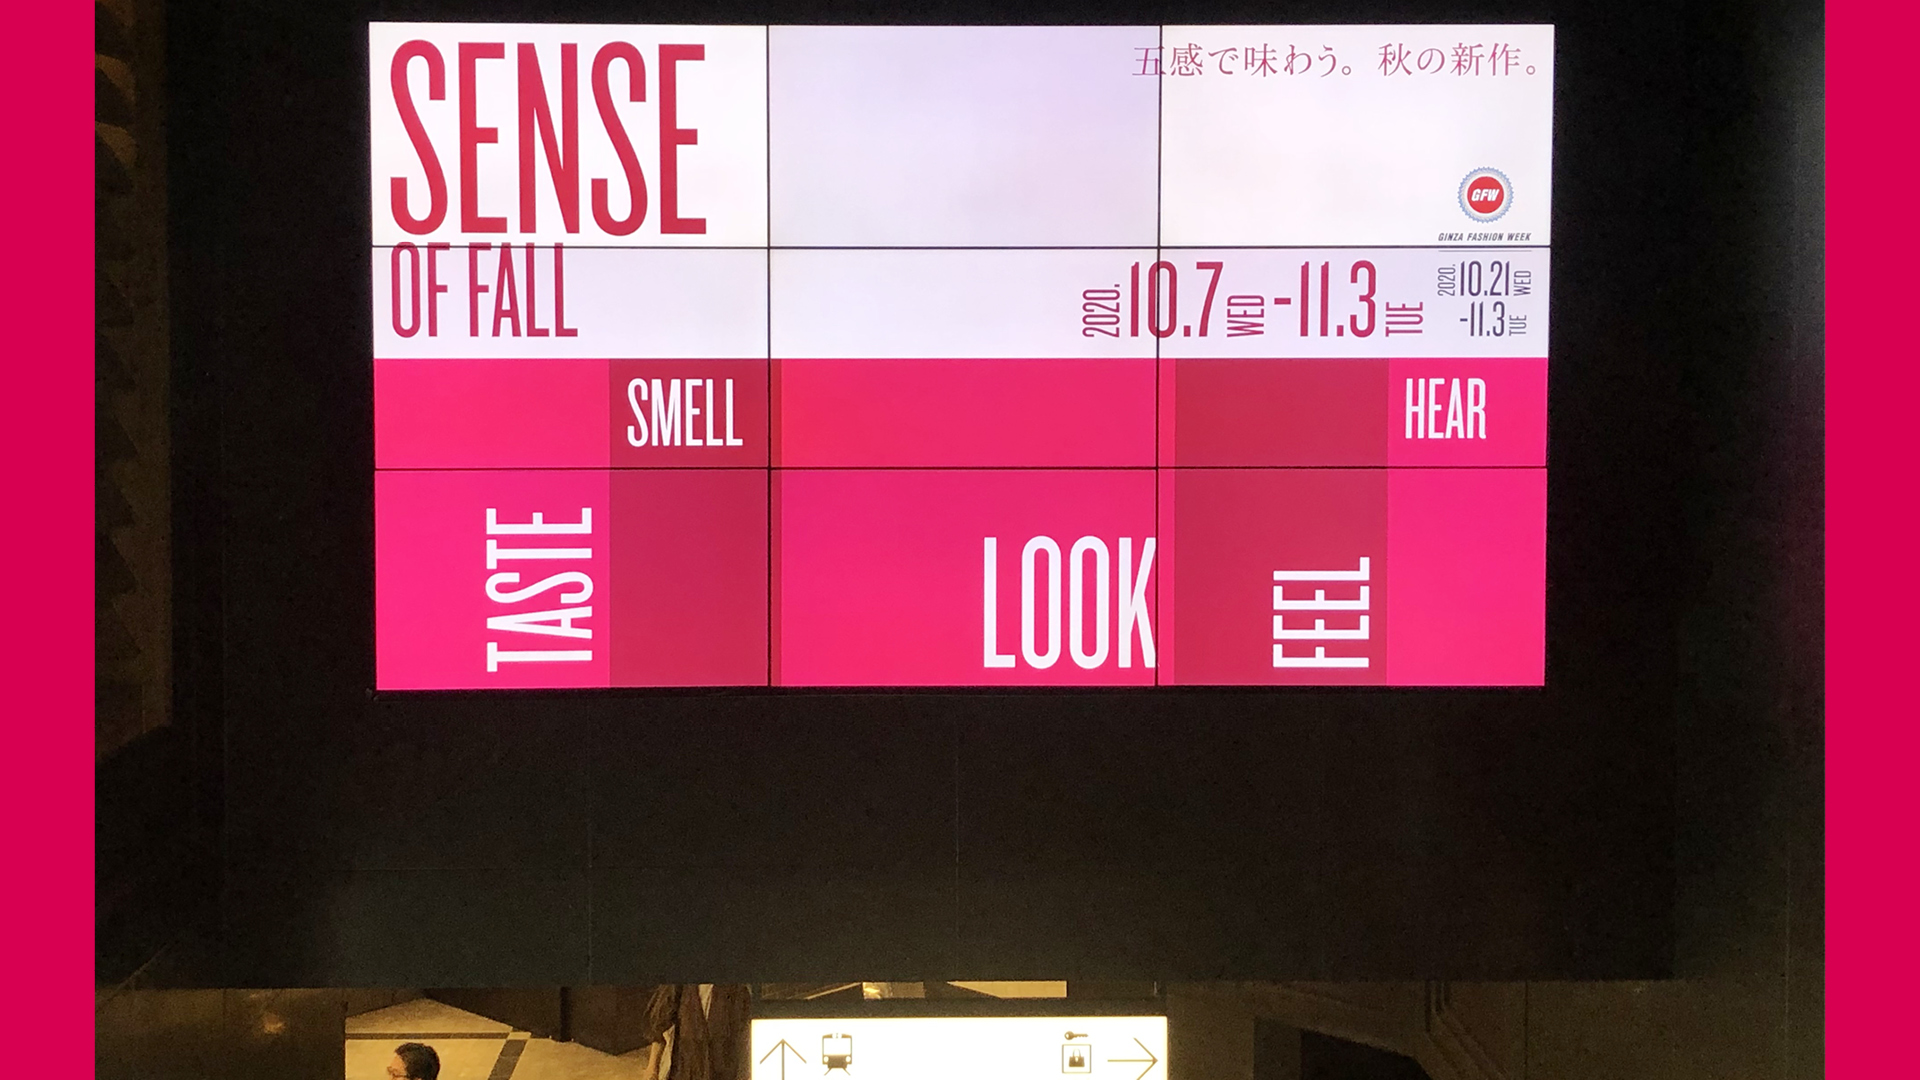 東急プラザ銀座SENSE OF FALLの階段広告